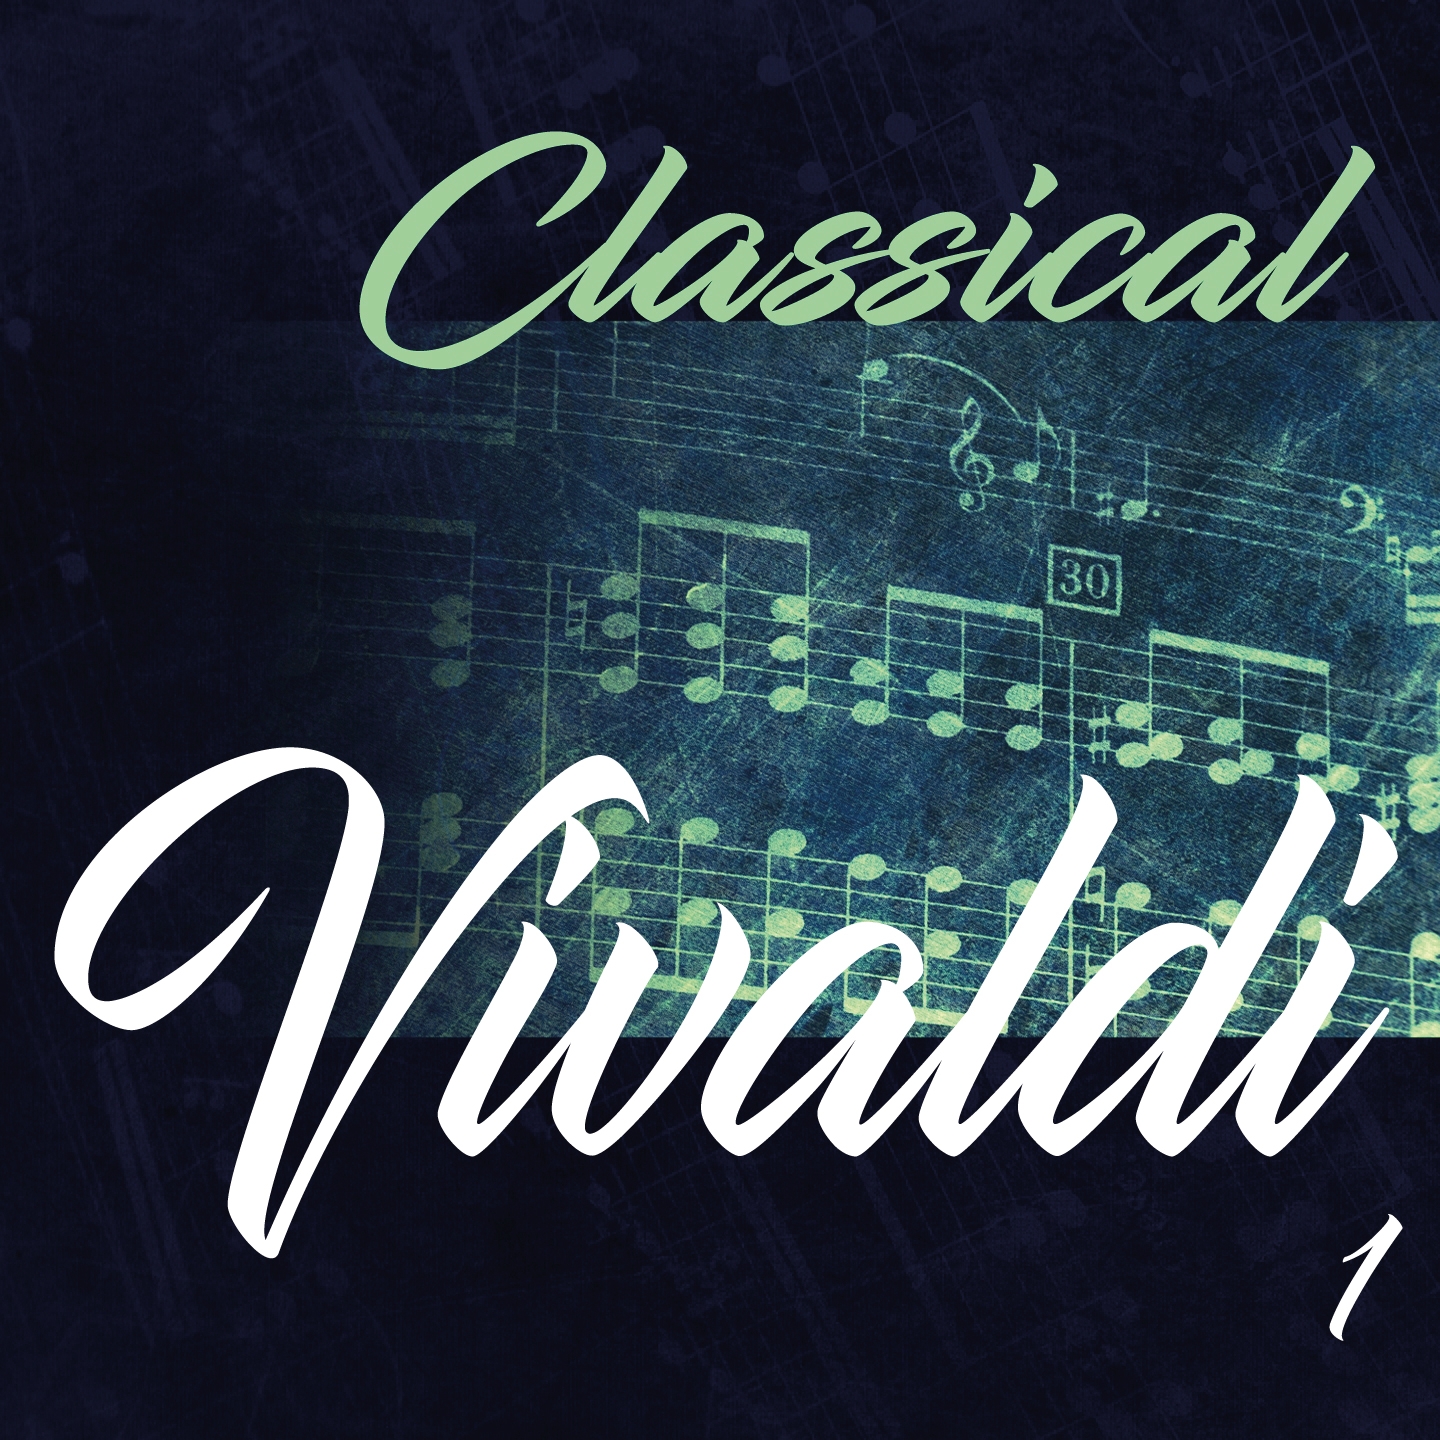 Classical Vivaldi 1